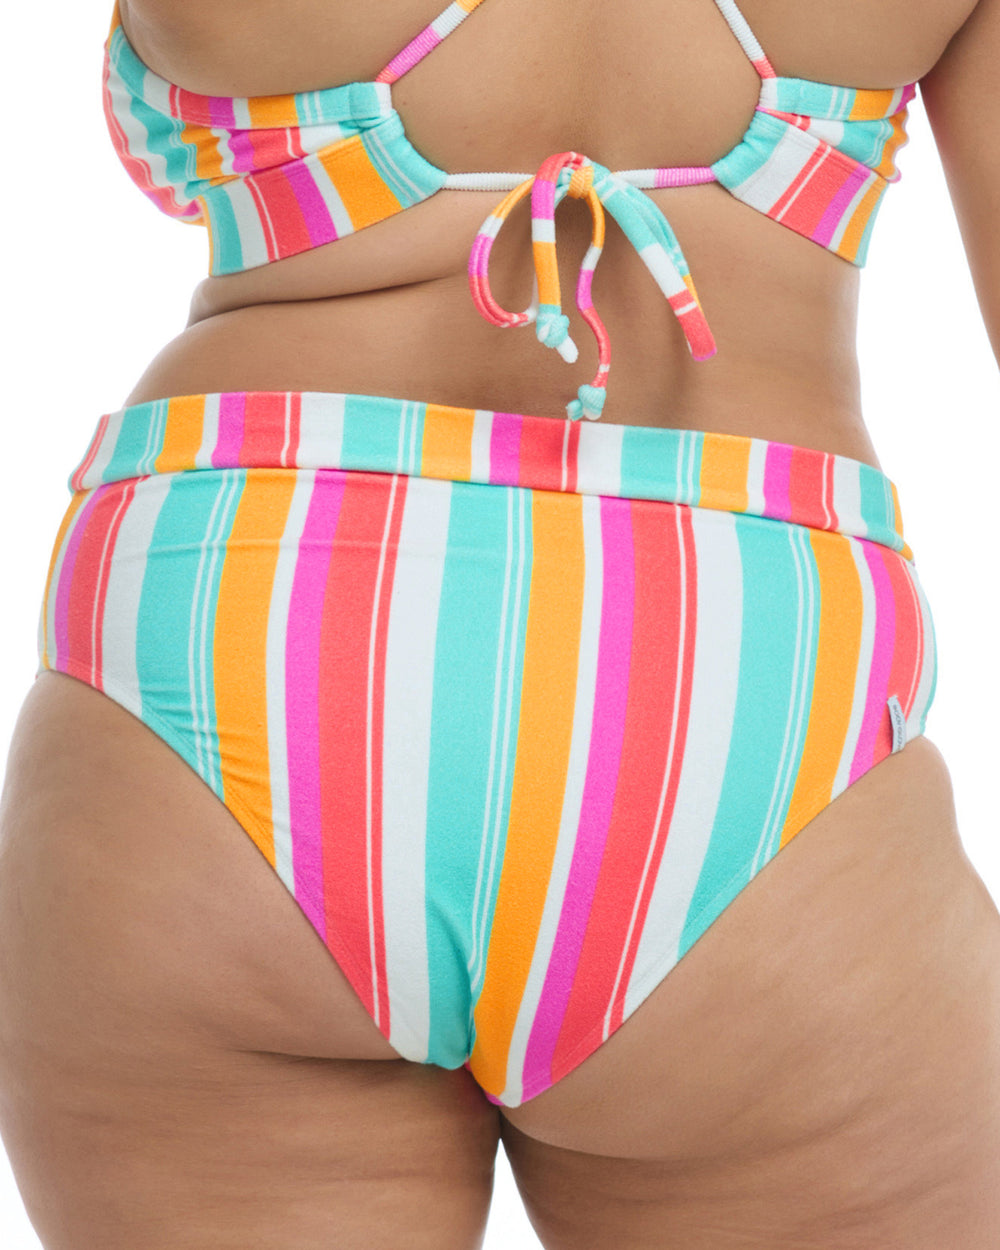 Firenze Marlee Plus-Size High-Waist Bikini Bottom - Multi